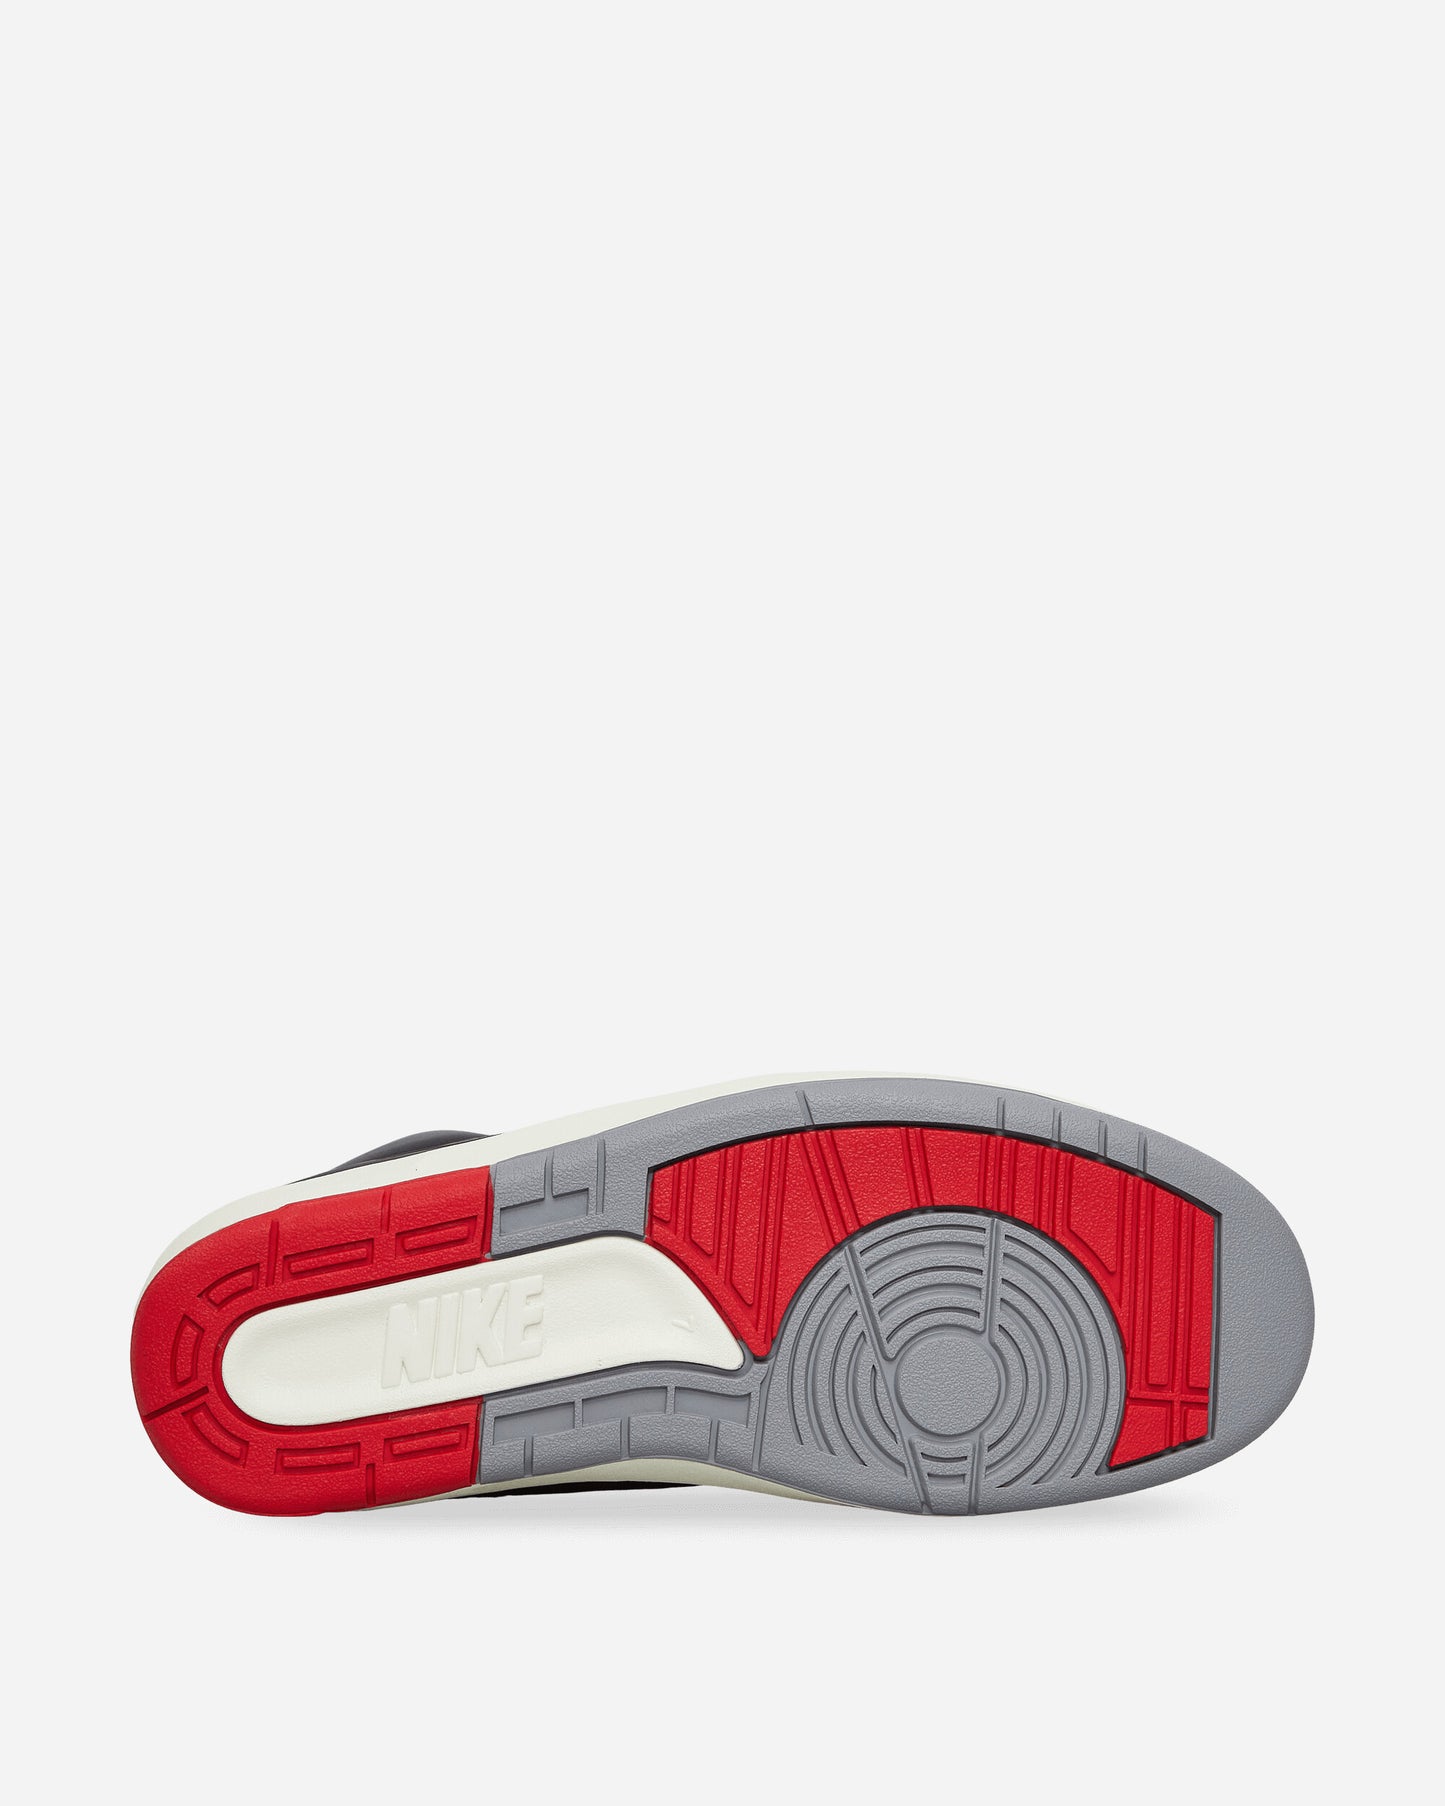 Nike Jordan Air Jordan 2 Retro Black/Cement Grey Sneakers High DR8884-001